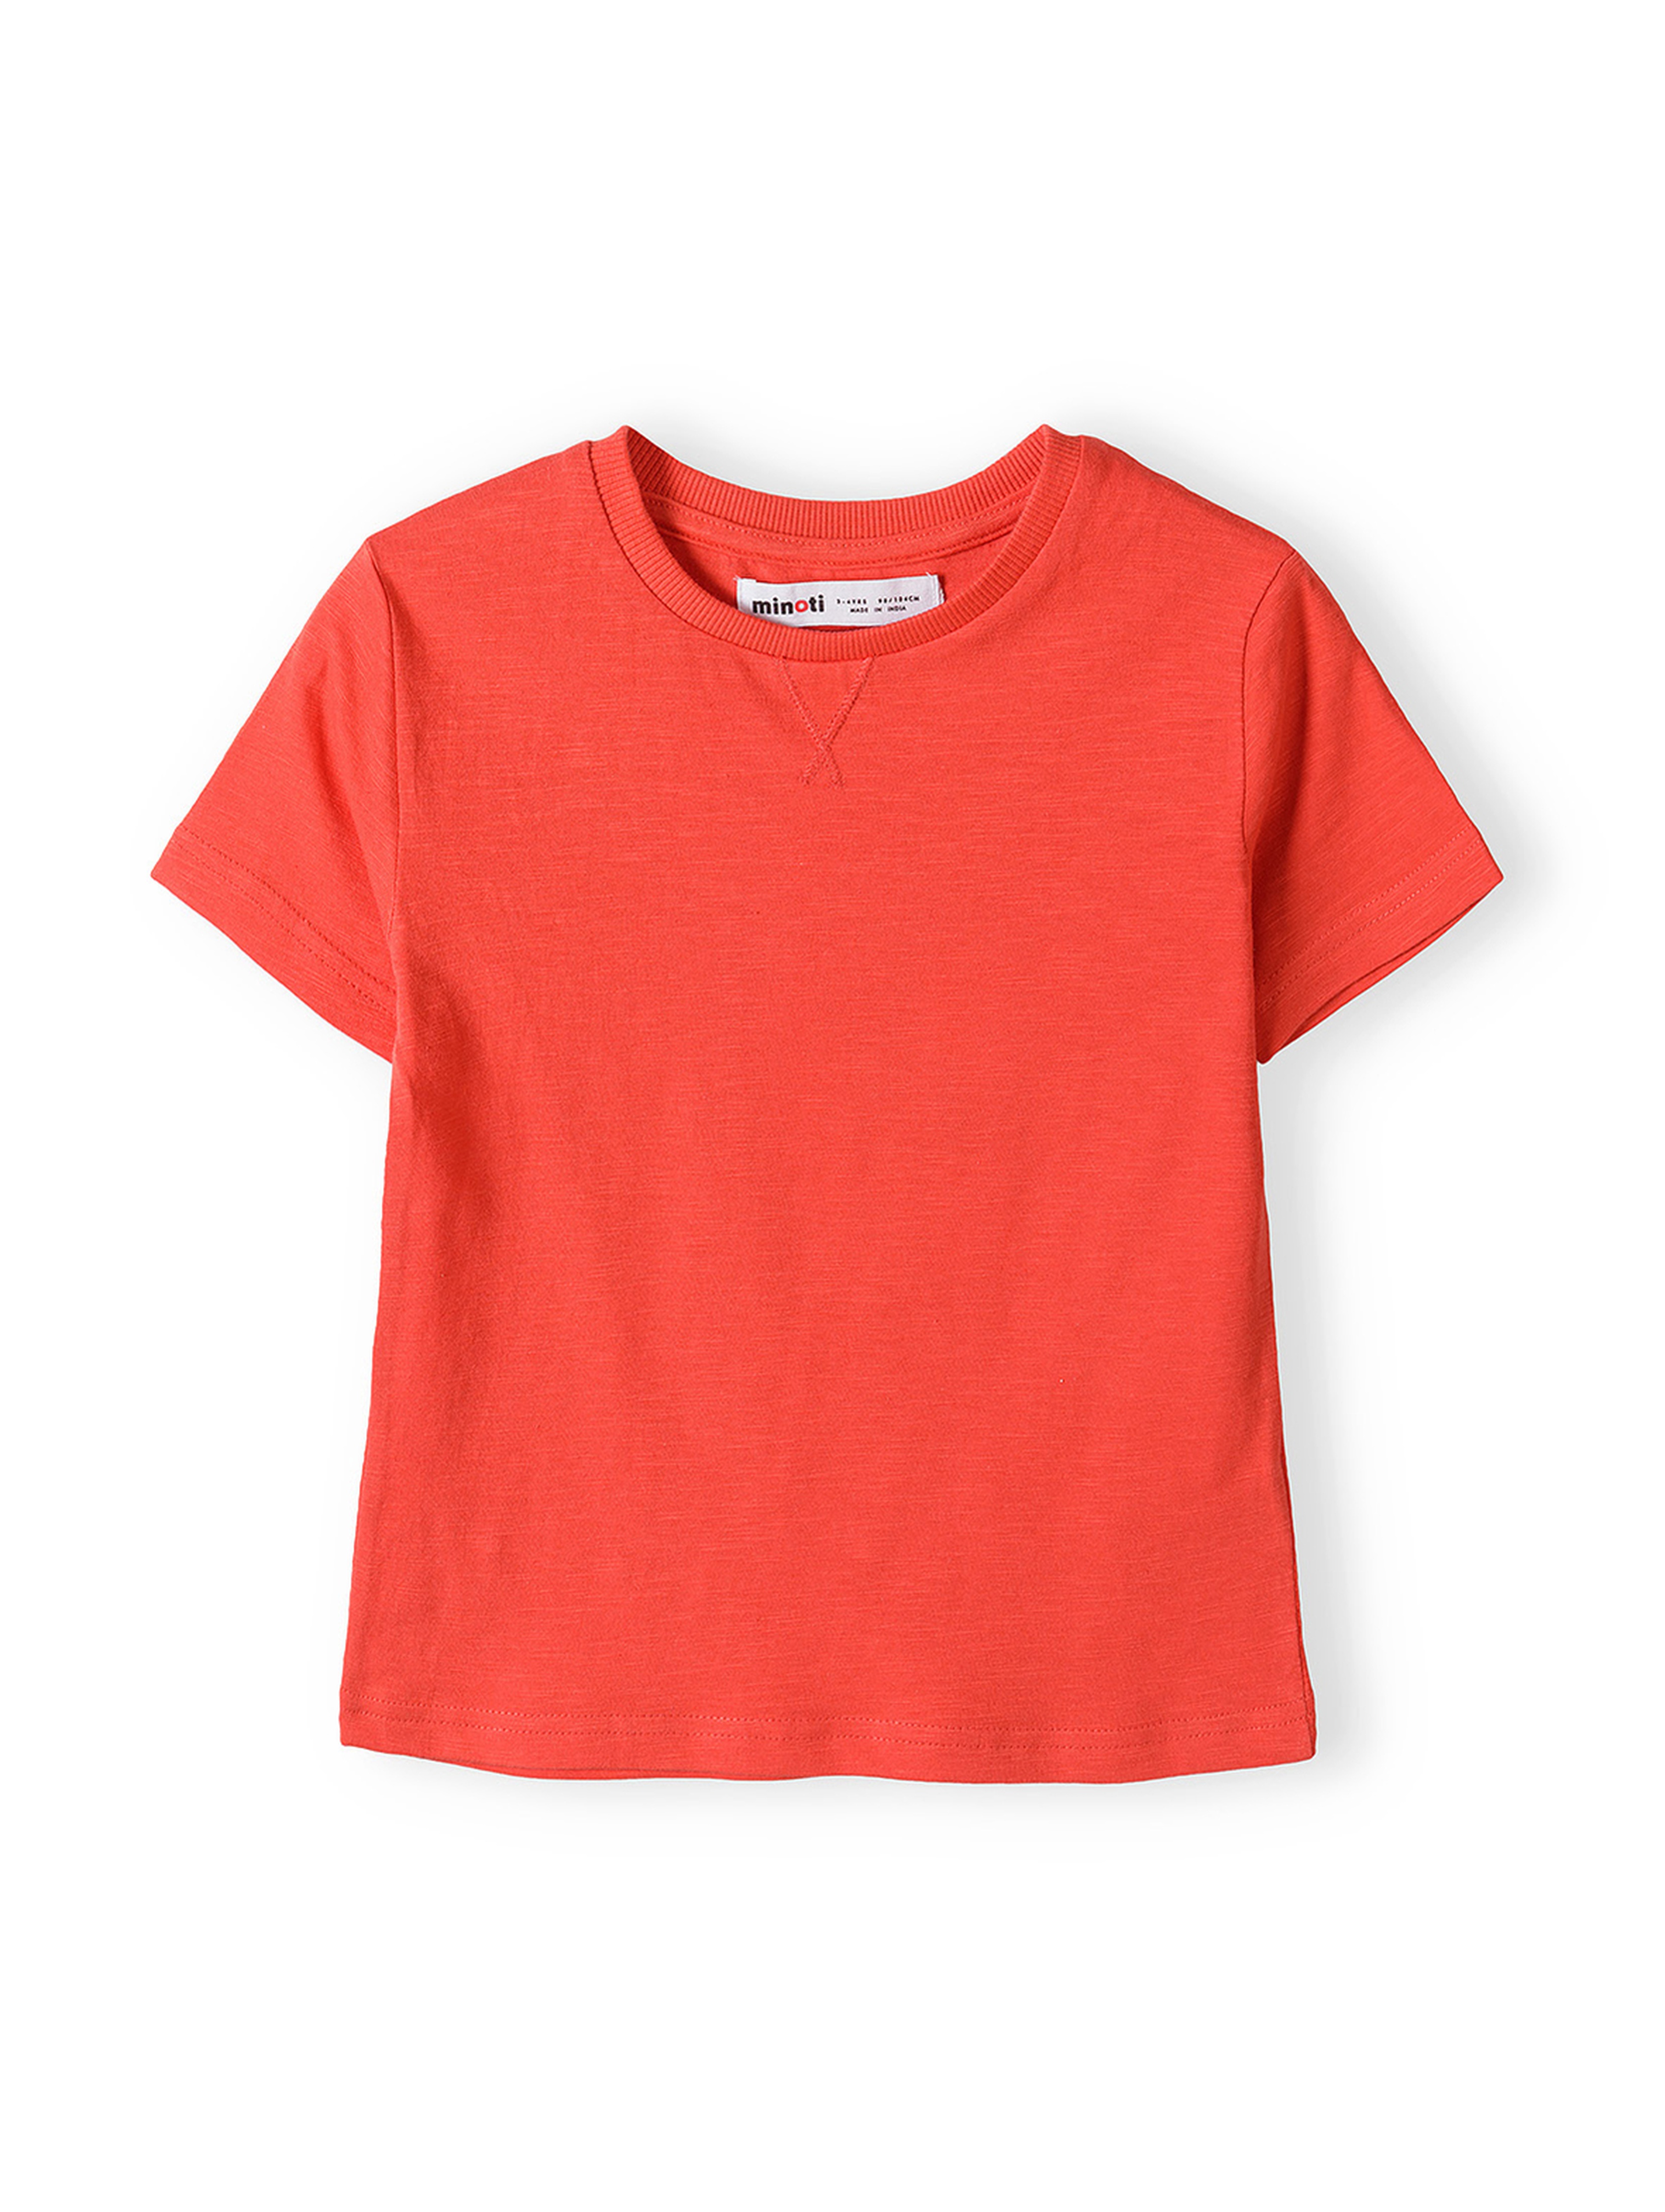 Czerwony t-shirt bawełniany basic dla niemowlaka